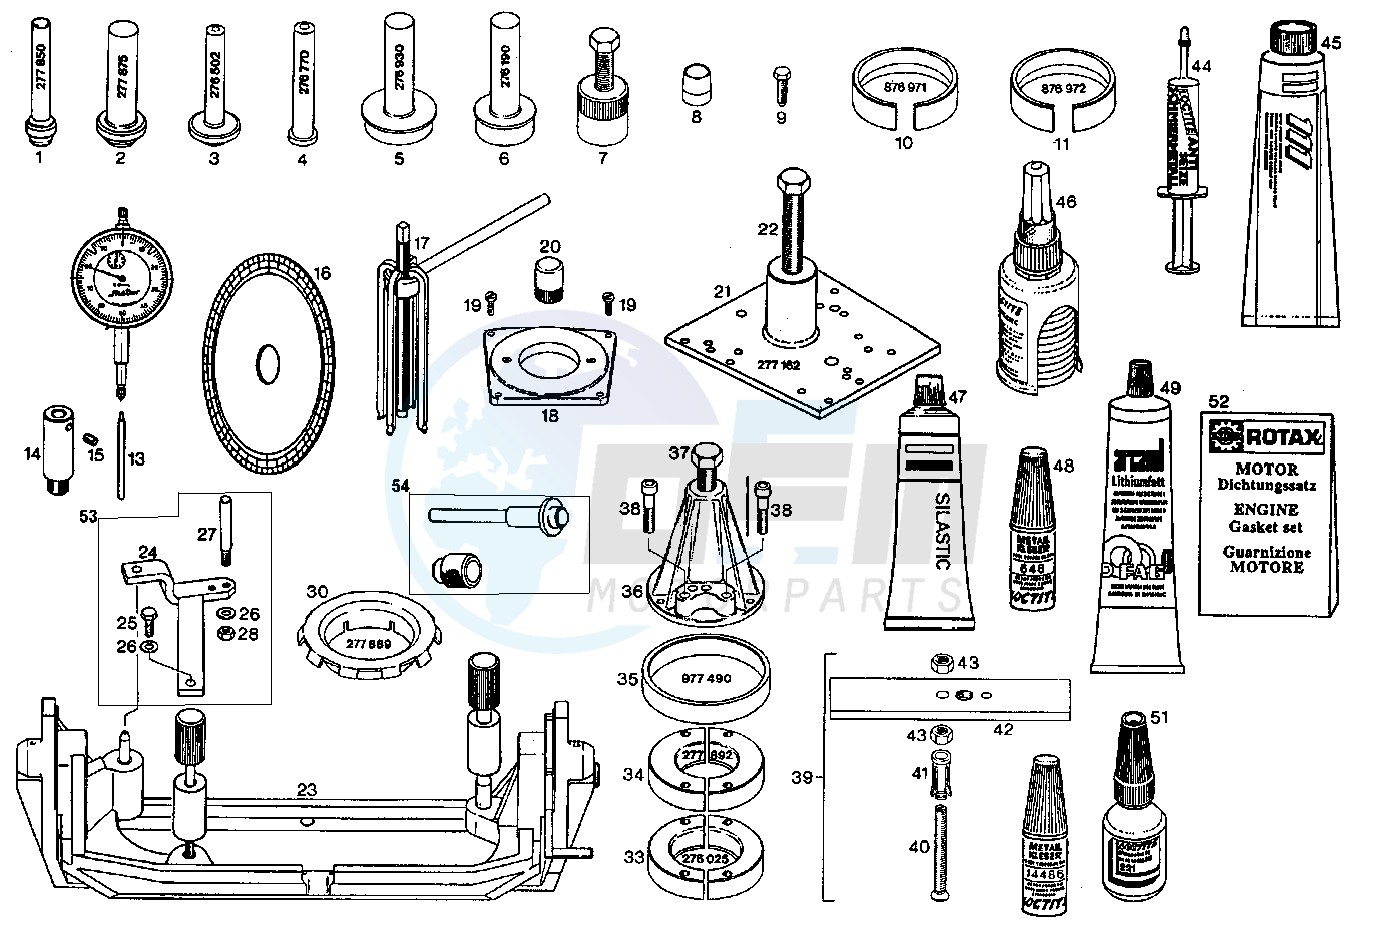 Repair tools - gasket set image